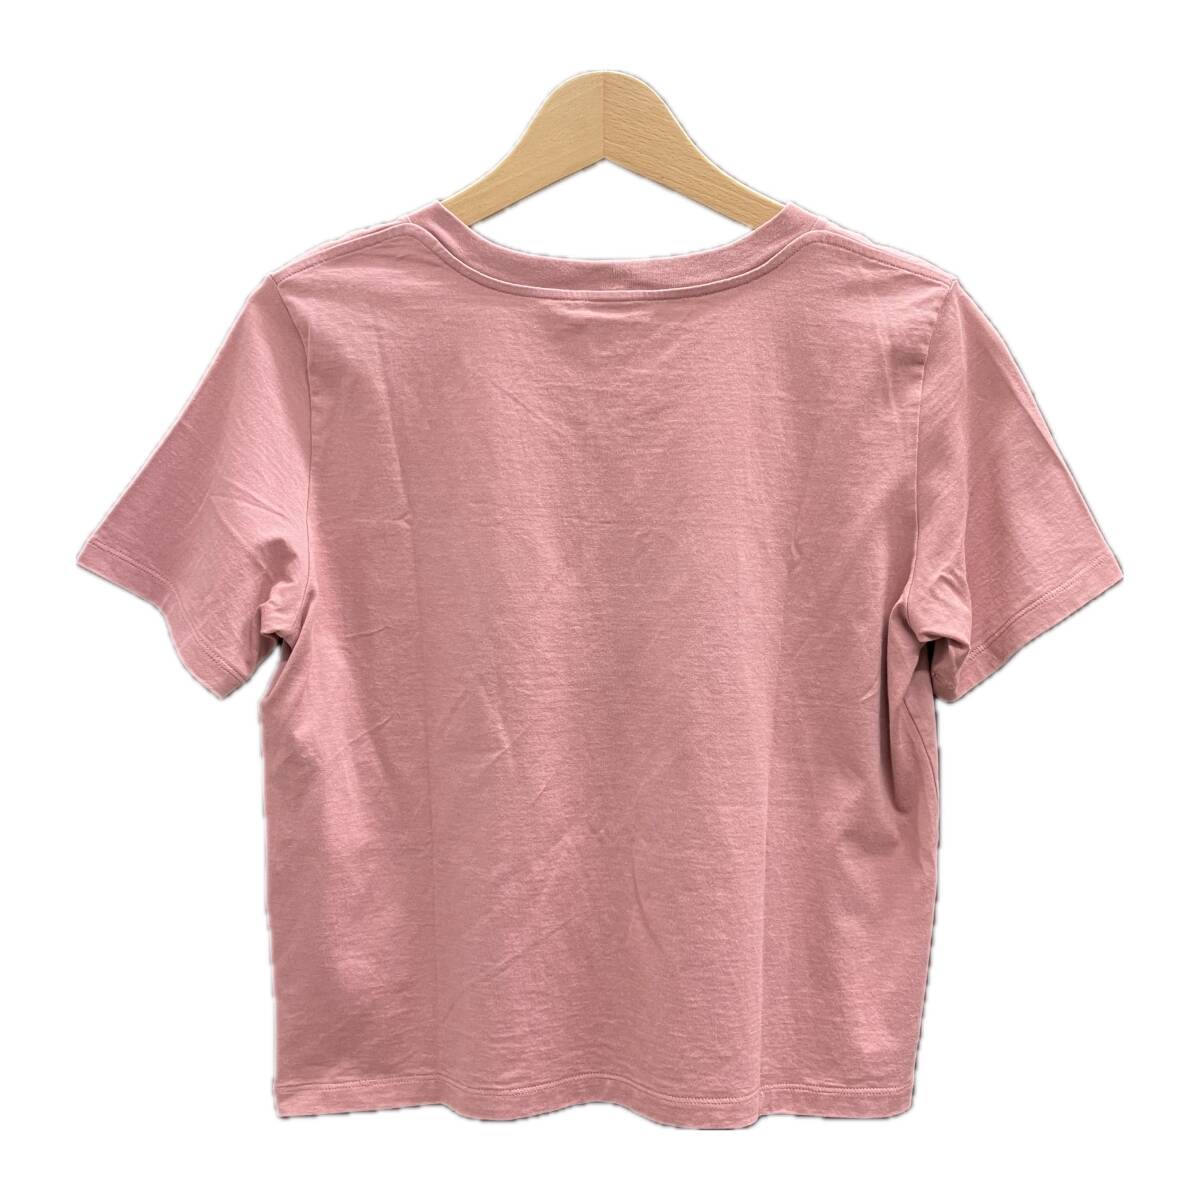 CELINE Celine Voxy футболка хлопок размер S женский 2X885671Q розовый магазин квитанция возможно 